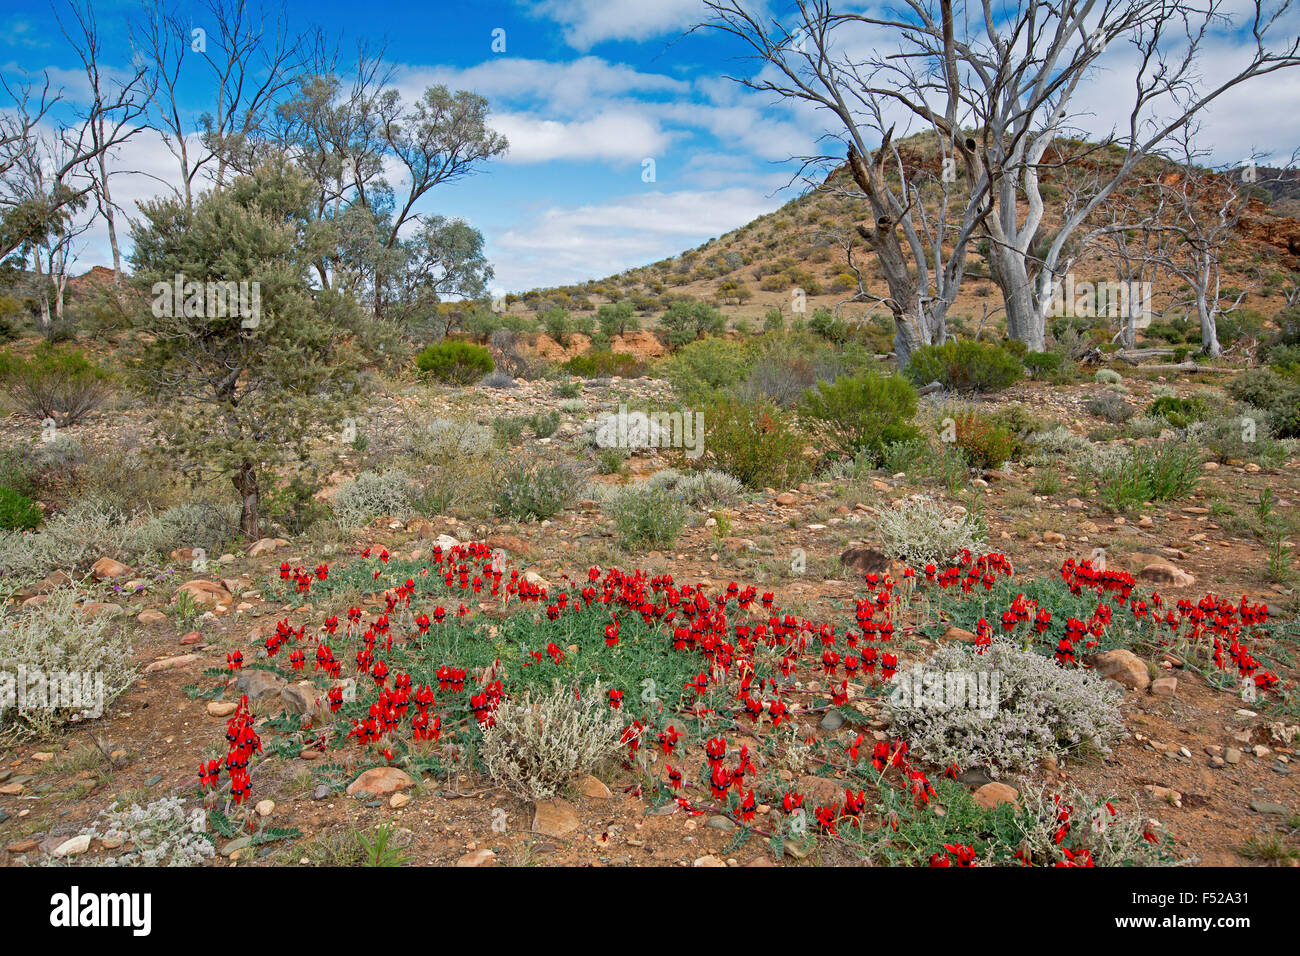 Paisaje en el outback de Australia con alfombra de flores rojas del espectacular desierto de Sturt, arveja Swainsona formosa & gum árboles bajo un cielo azul Foto de stock